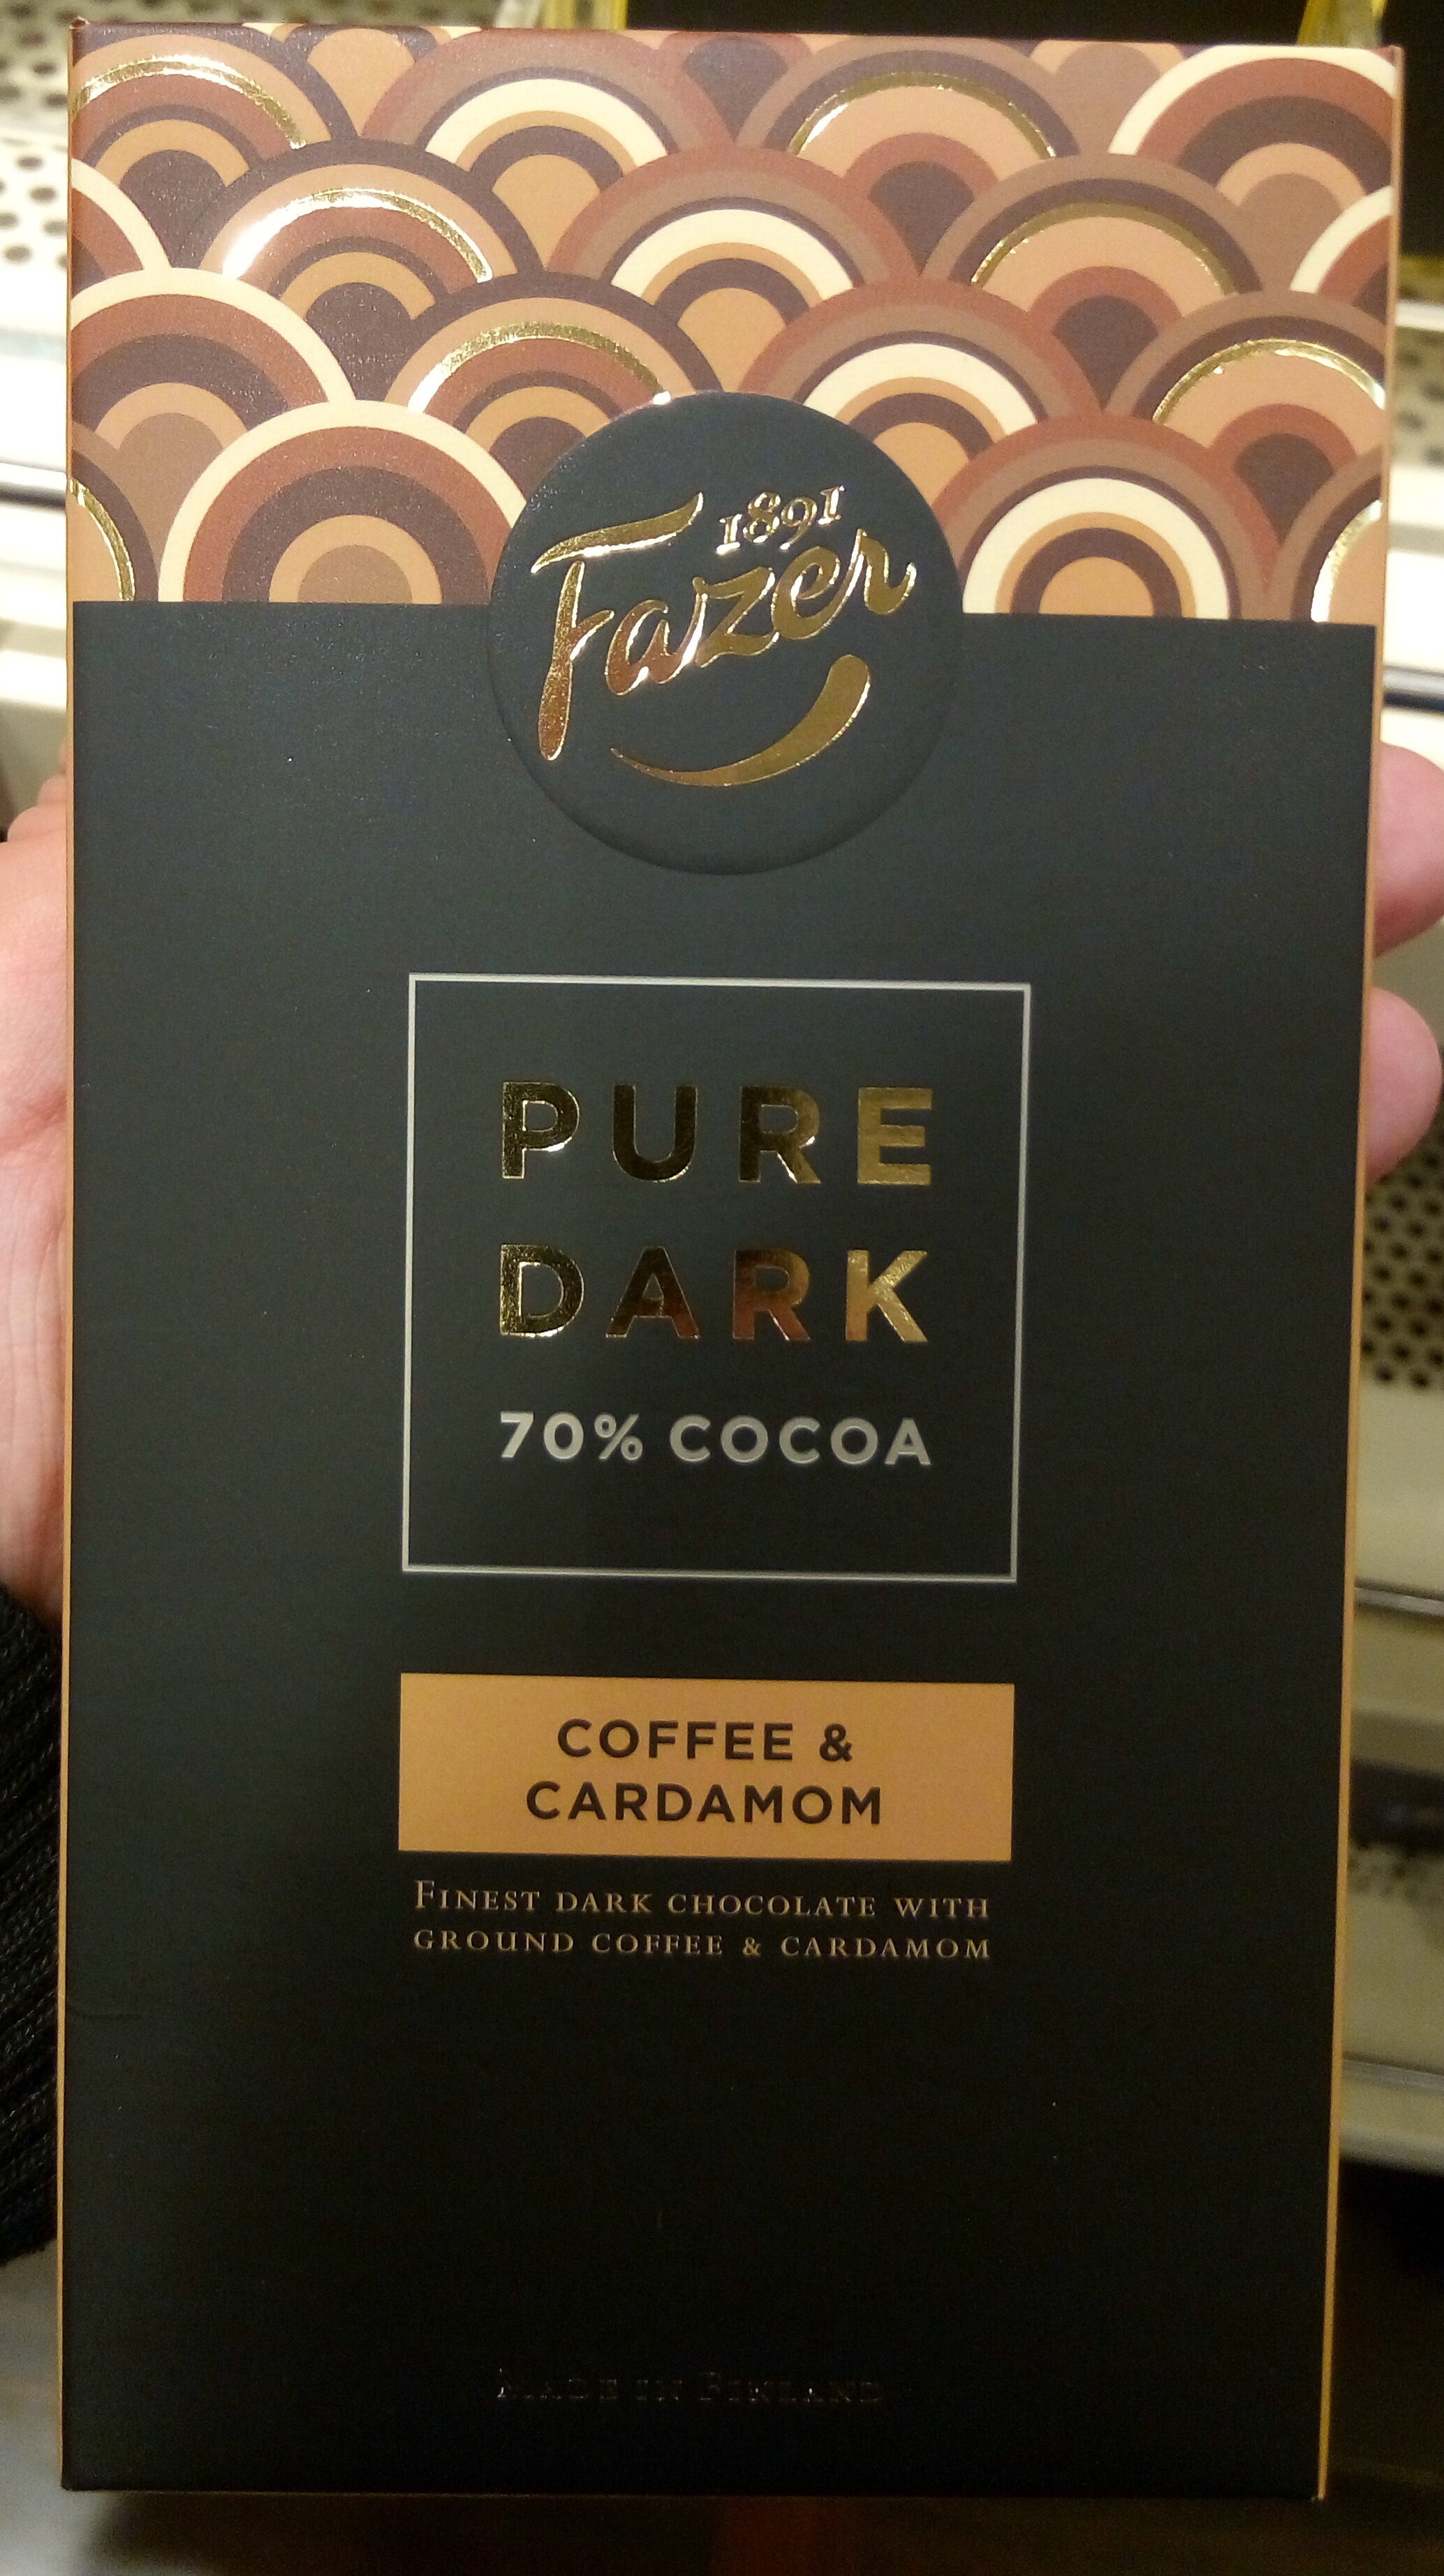 Pure Dark 70% Cocoa Coffee & Cardamon - Producte - fi